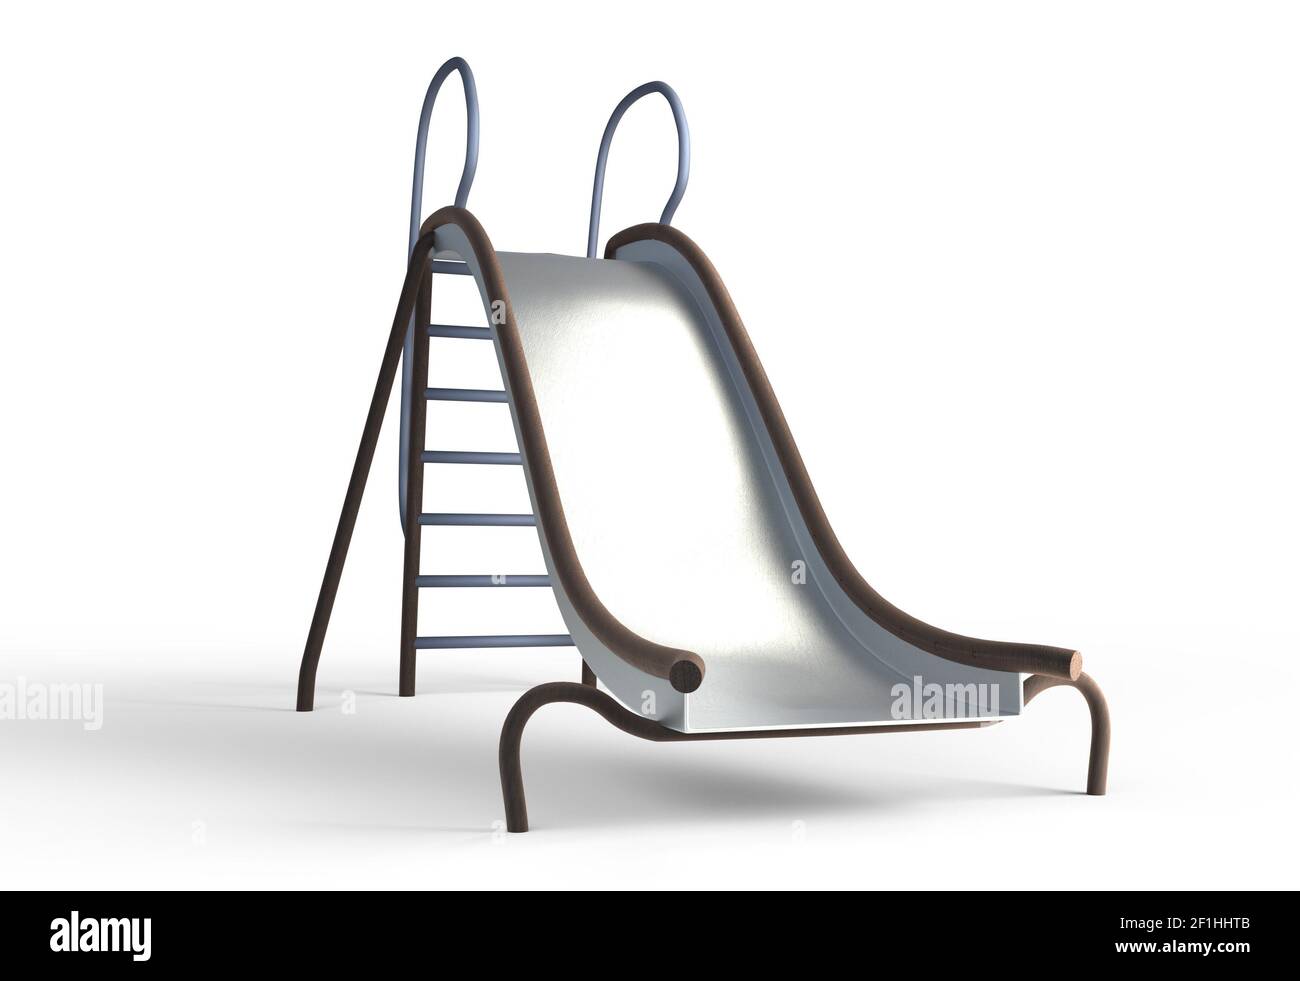 Metal slide playground for children 3d illustration Stock Photo